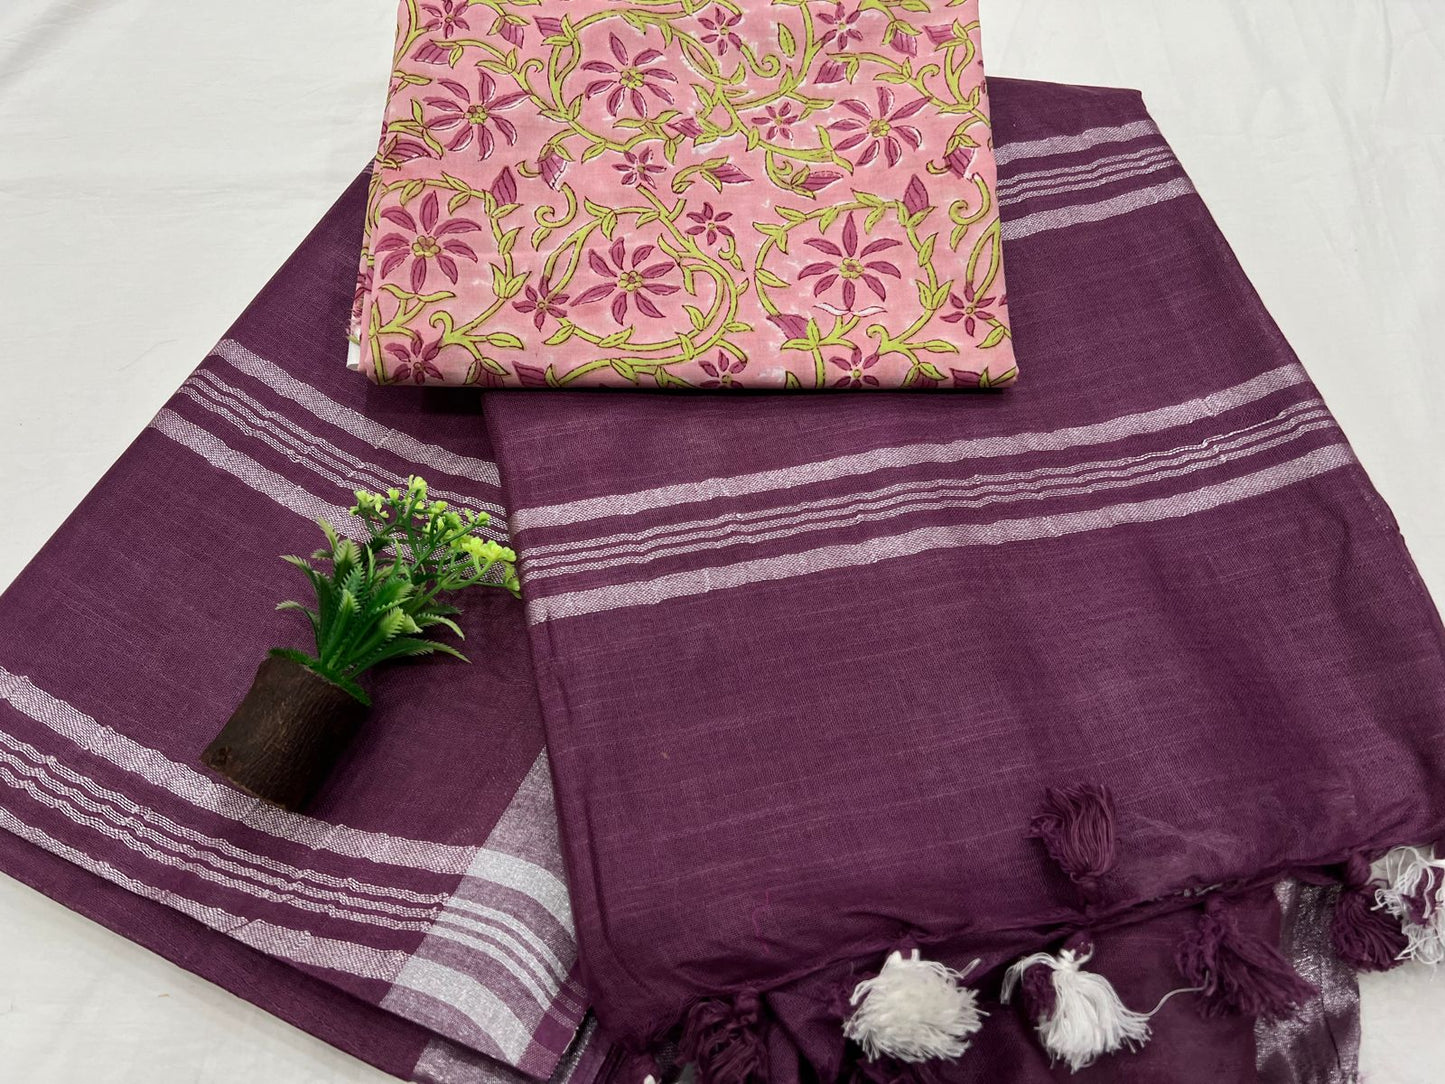 Lightweight Handloom Cotton linen Saree